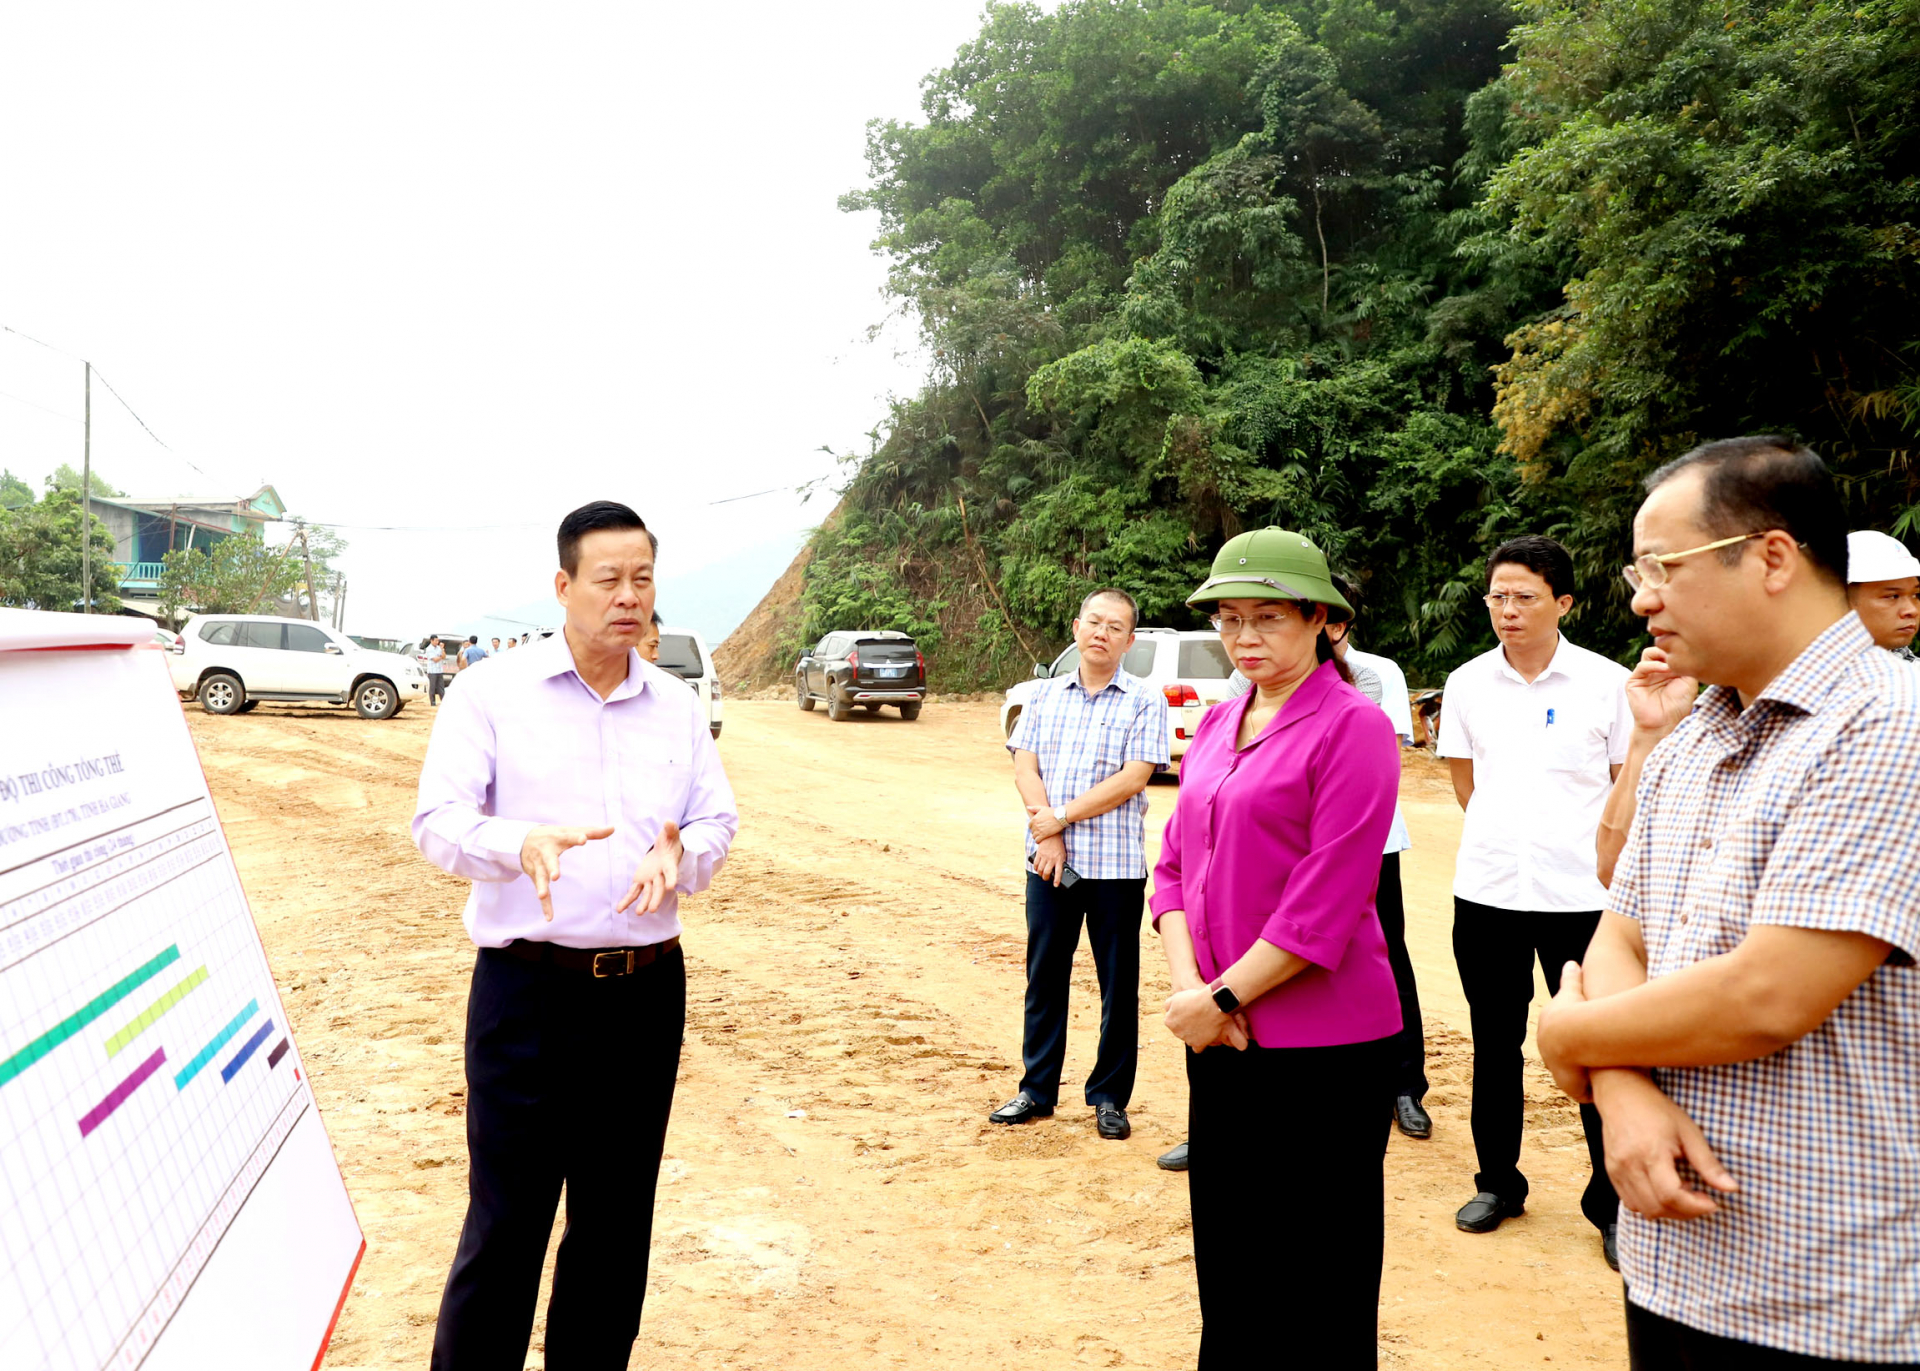 Để kịp thời tháo gỡ khó khăn, Chủ tịch UBND tỉnh Nguyễn Văn Sơn và Phó Chủ tịch UBND tỉnh Hà Thị Minh Hạnh thường xuyên, trực tiếp kiểm tra, chỉ đạo đẩy nhanh tiến độ Dự án nâng cấp đường tỉnh ĐT178 (Yên Bình - Cốc Pài).